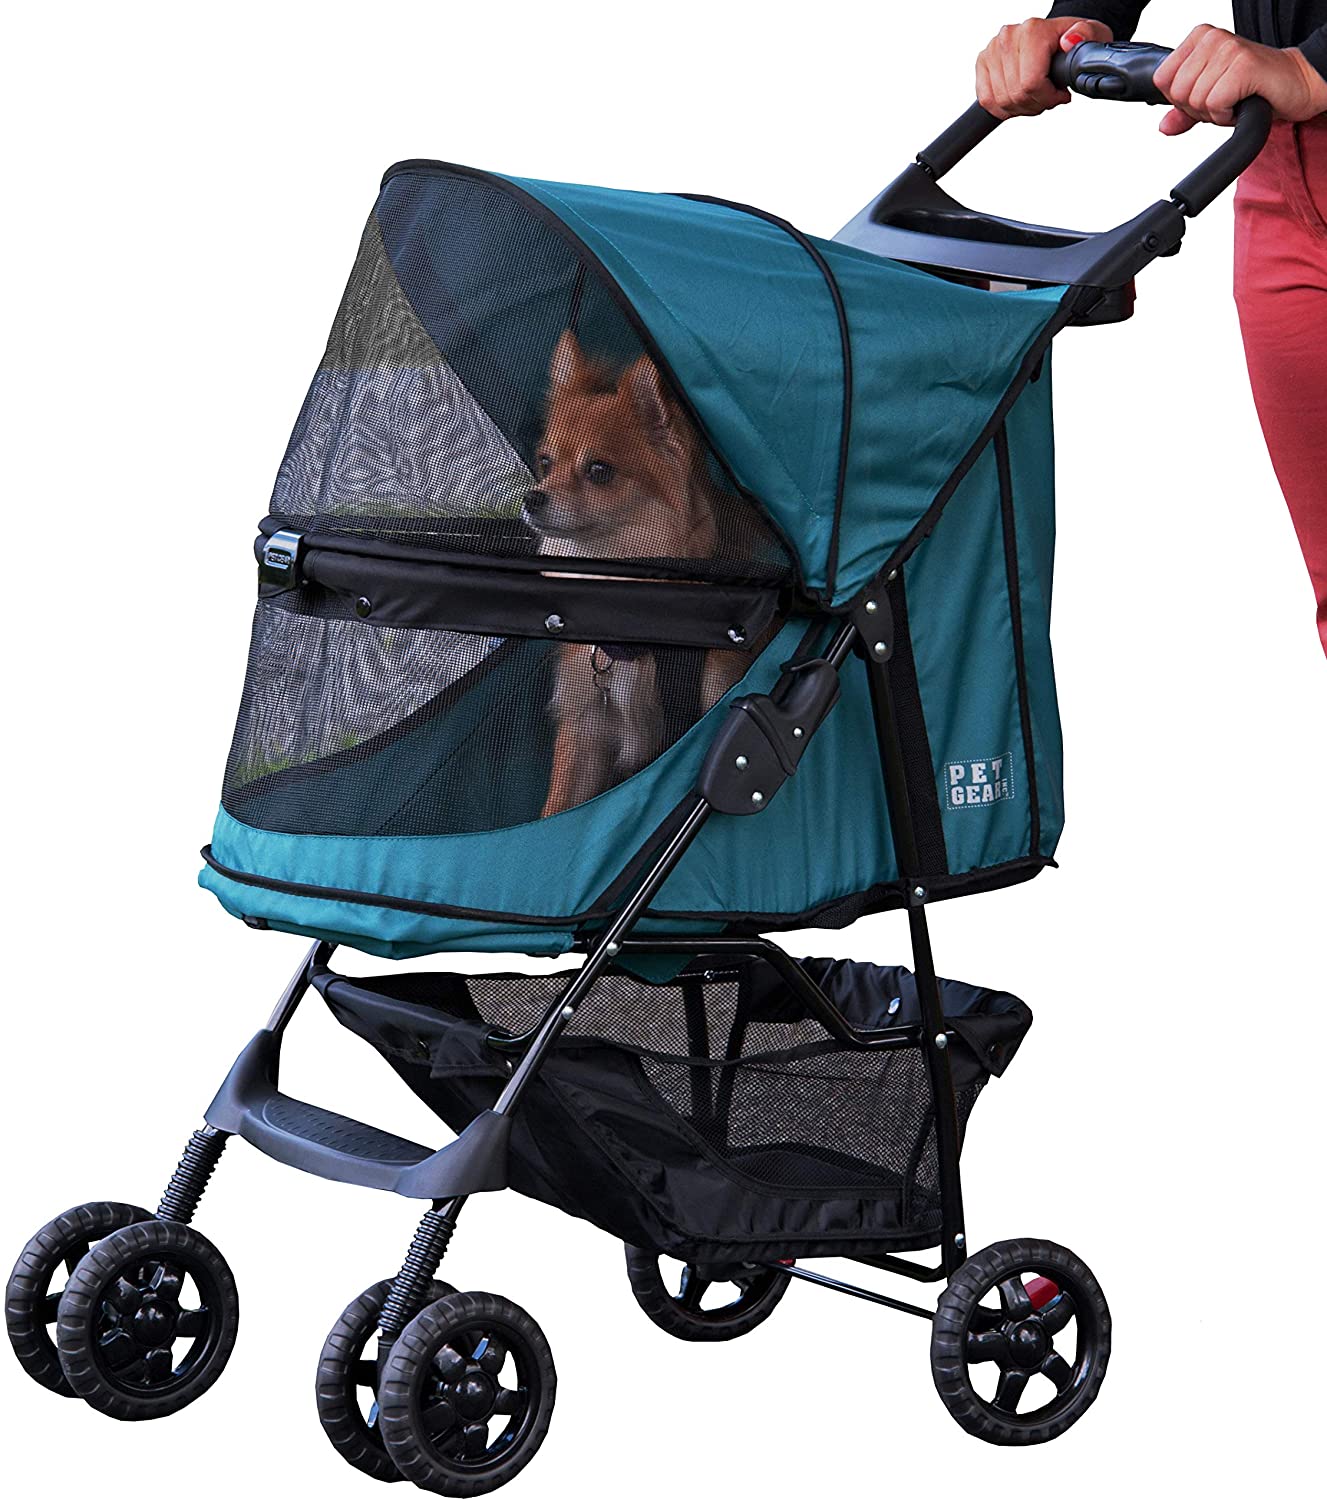  Pet Gear Happy Trails - Cochecito para gatos/perros, entrada sin cremallera, fácil de plegar con forro extraíble, cesta de almacenamiento + portavasos 